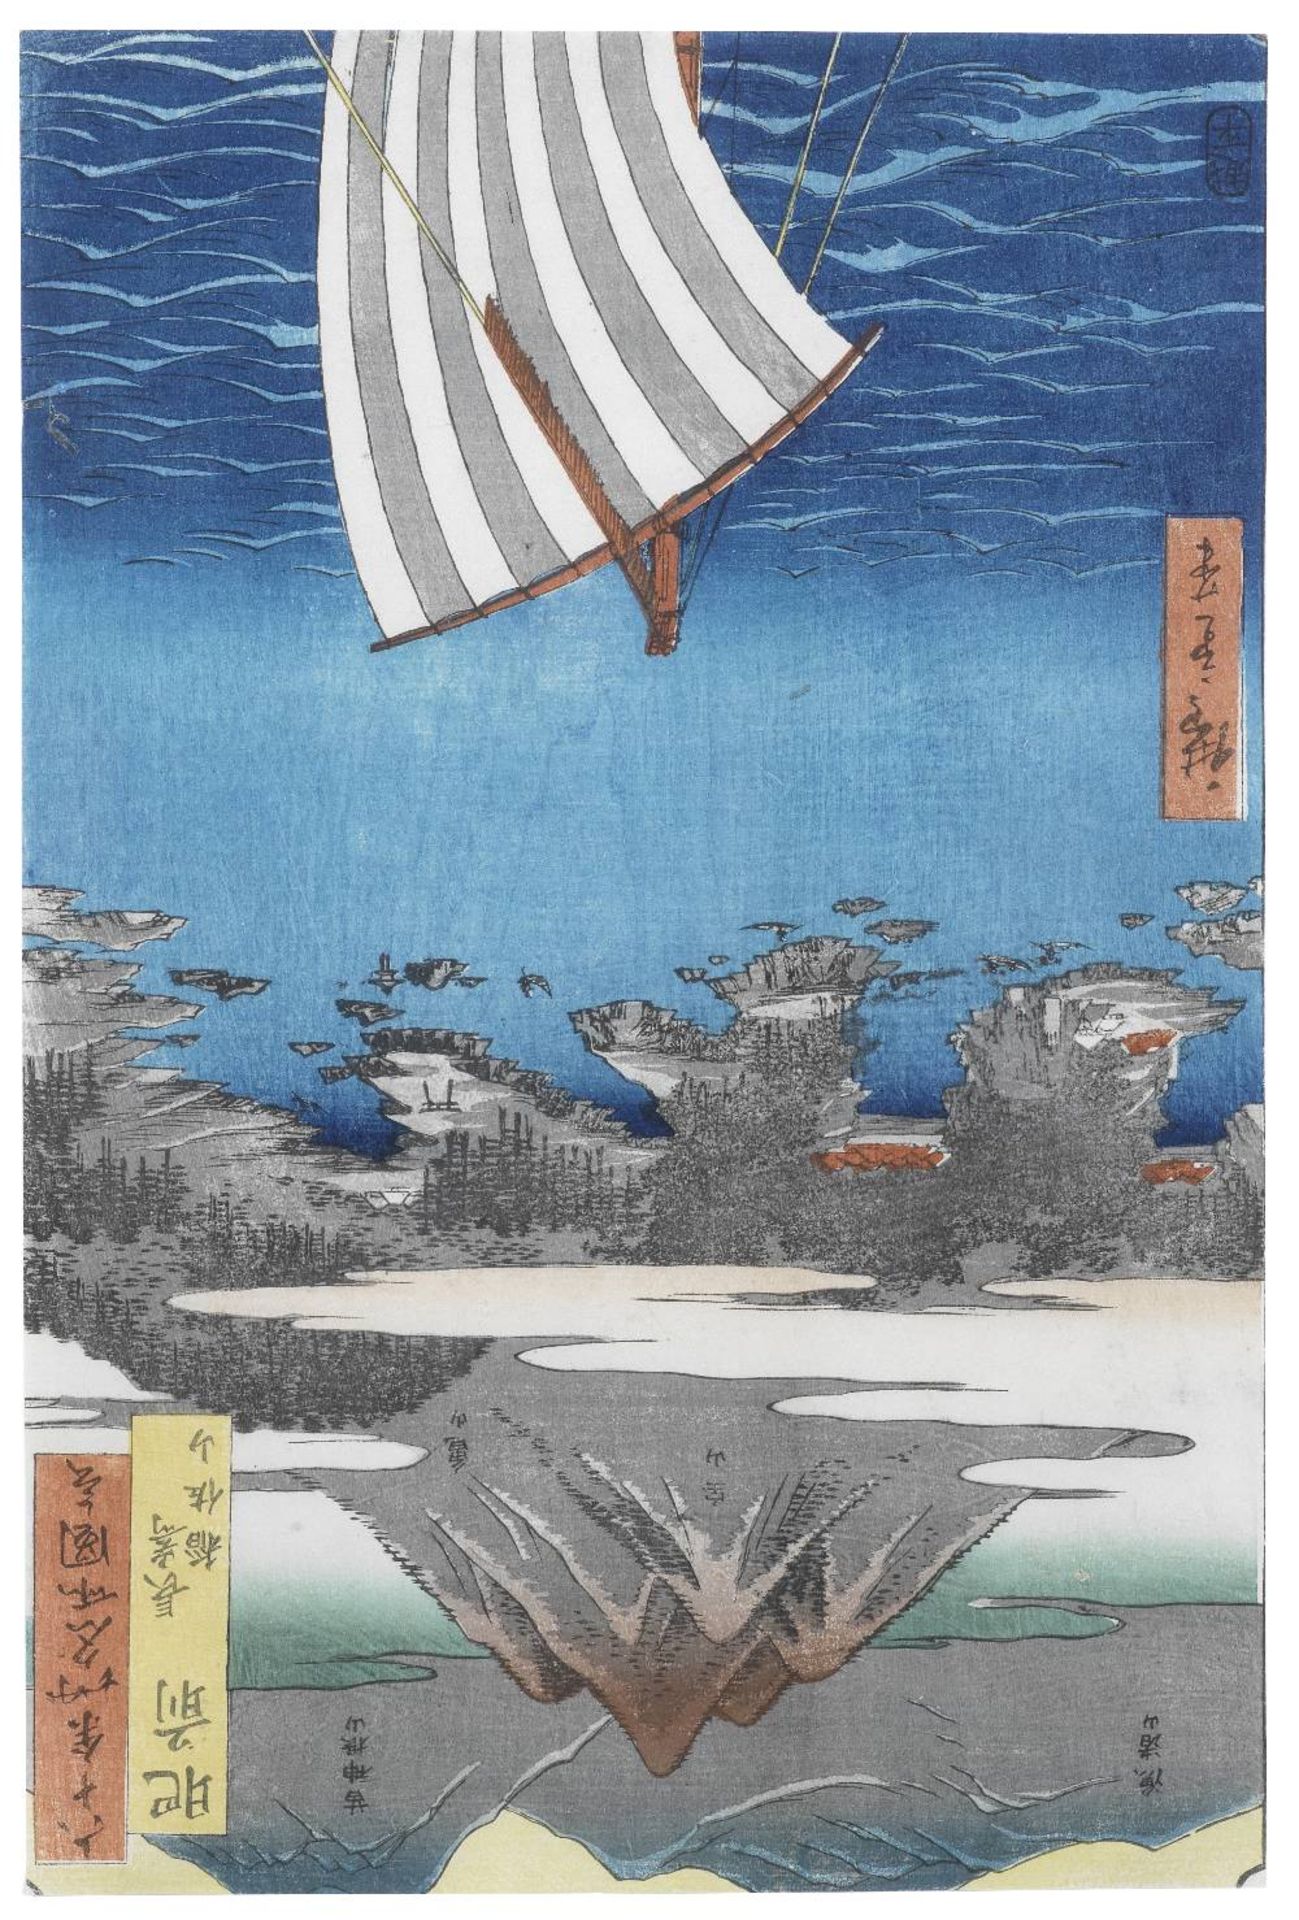 UTAGAWA HIROSHIGE (1797-1858) Edo period (1615-1868), circa 1856